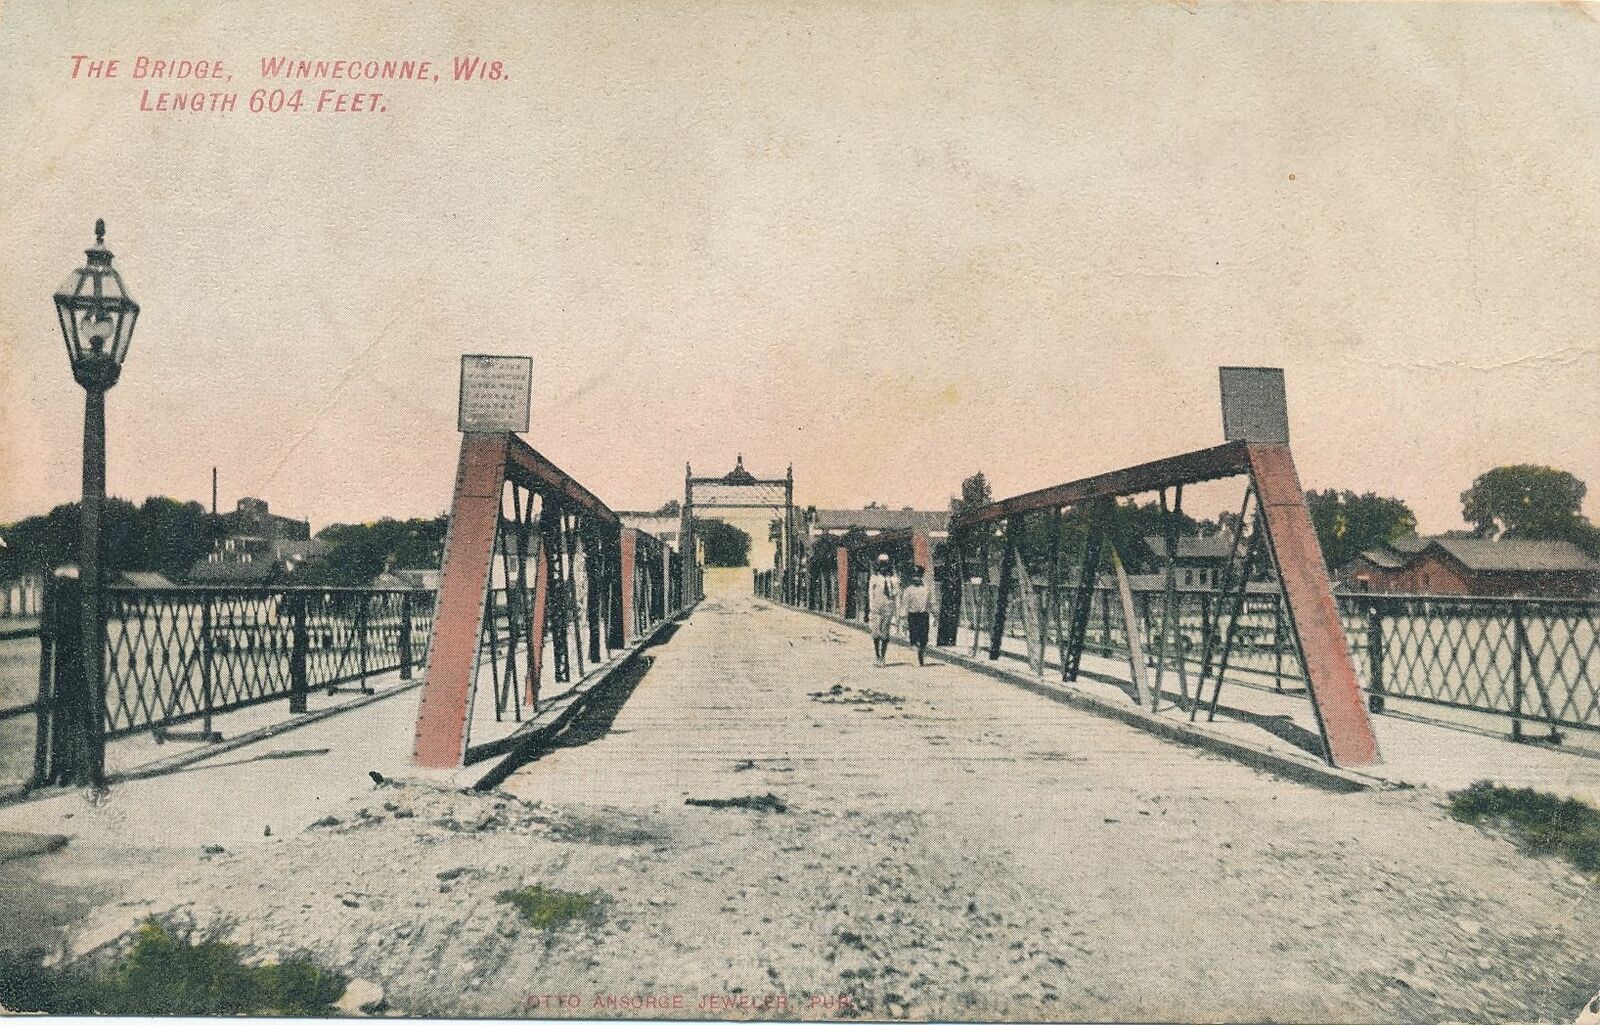 WINNECONNE WI - The Bridge (Length 604 Feet) - 1908